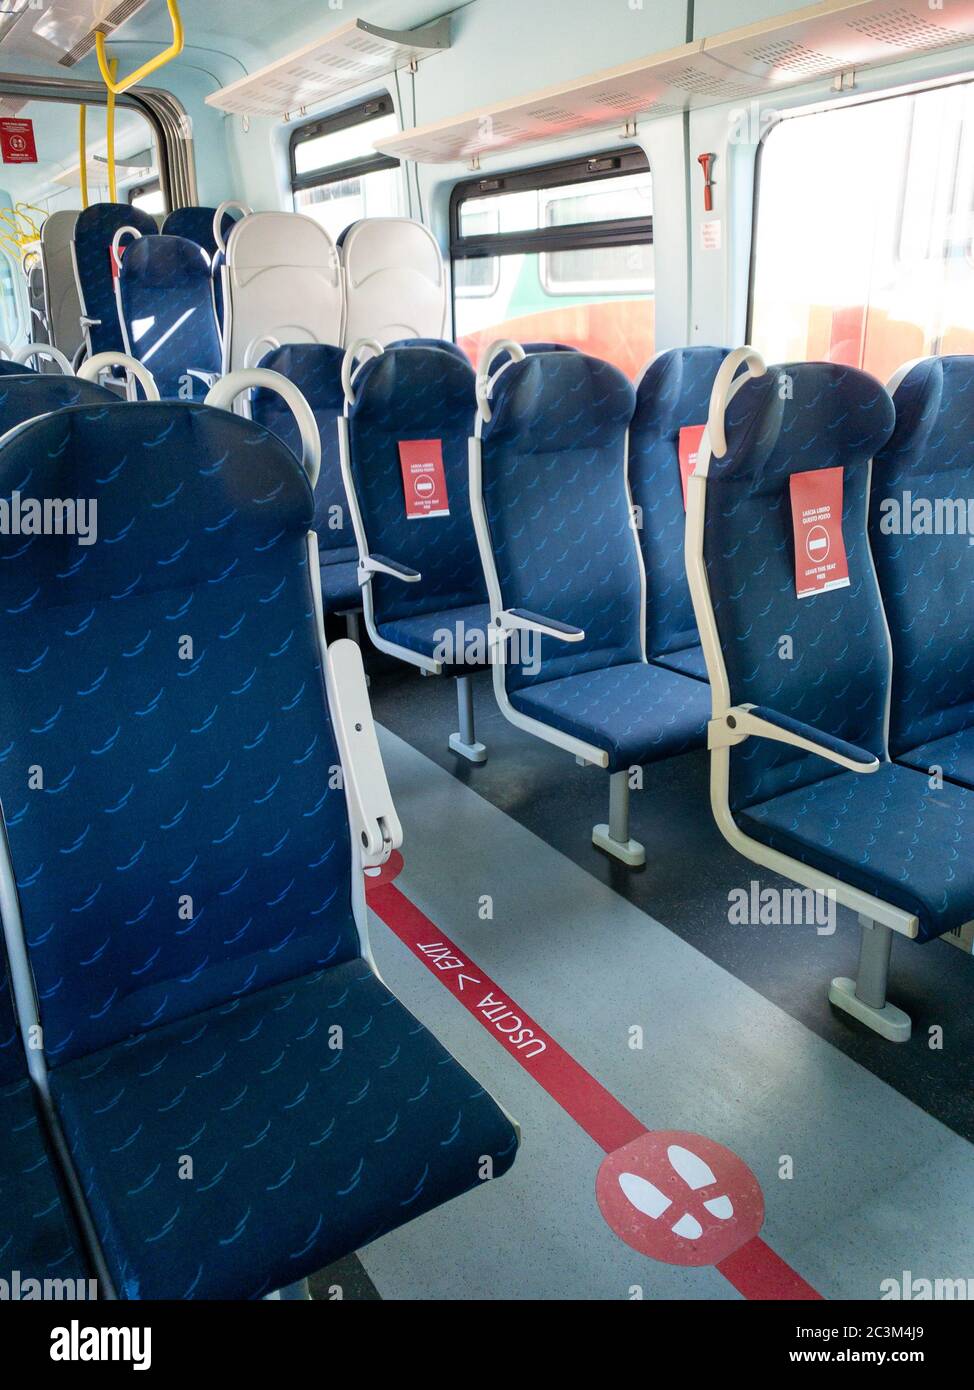 Mantova, Italia - 20 giugno 2020: treno trenitalia con cartelli rossi sui sedili che dicono di lasciare il posto libero, nuove regole di distanza dovute al coronavirus pan Foto Stock